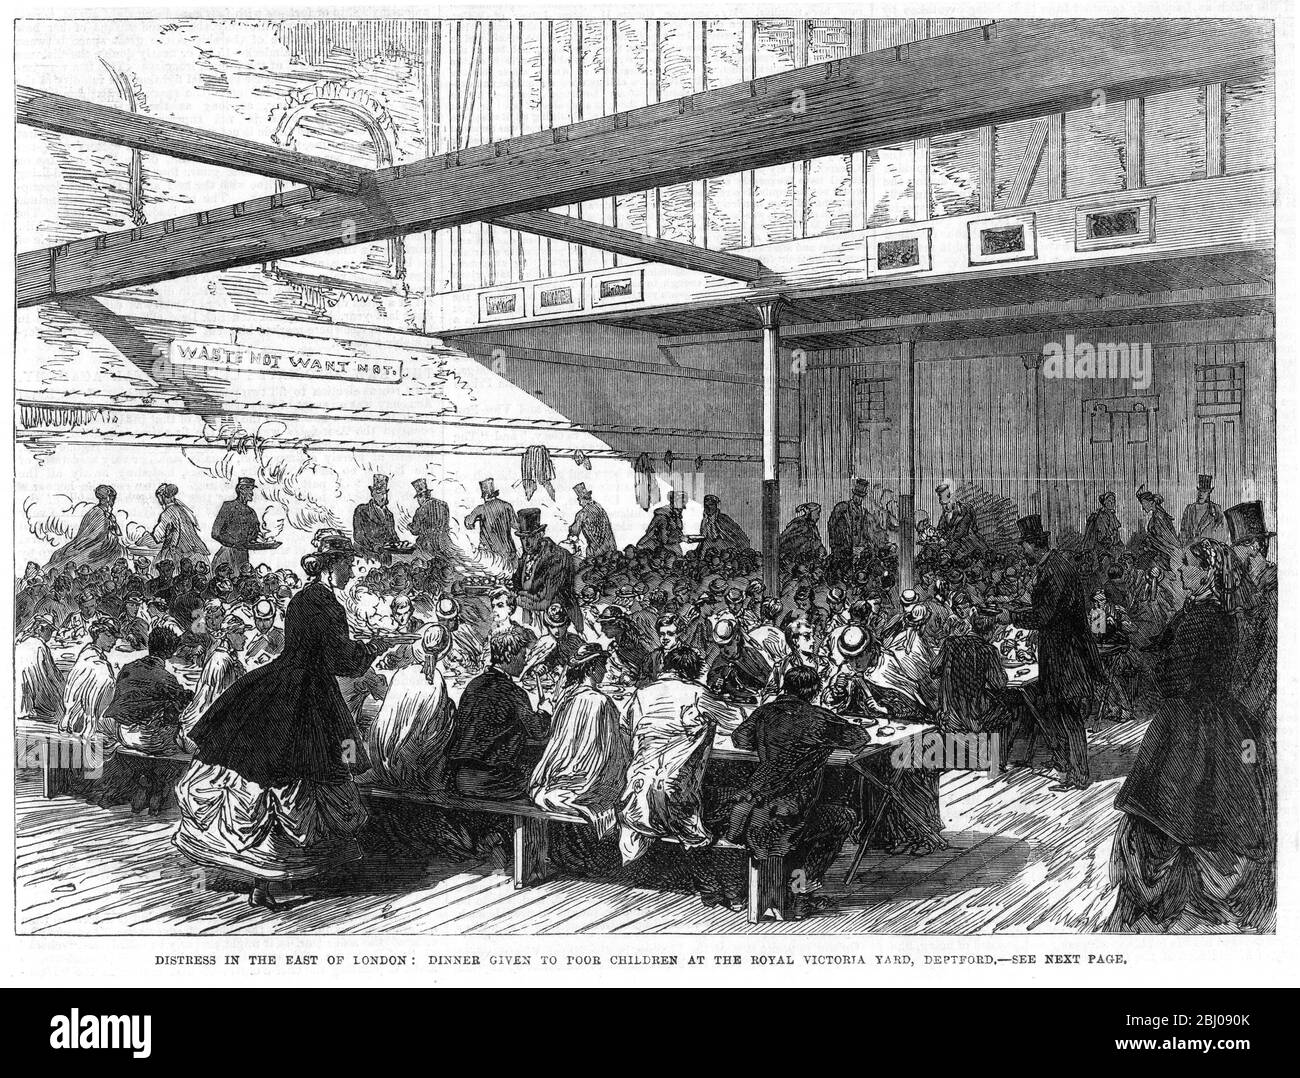 Arme Kinder haben im Royal Victoria Yard, Deptford London, Essen gegeben. Die Not unter den armen Menschen in East London wird durch das kalte Wetter und die erhöhte Arbeitslosigkeit noch verschärft. Mehr als 5000 arme Kinder haben kostenlose Abendessen mit gesammelten Mitteln von denen, die noch in der Arbeit auf dem Hof gegeben. - 9. März 1867 Stockfoto